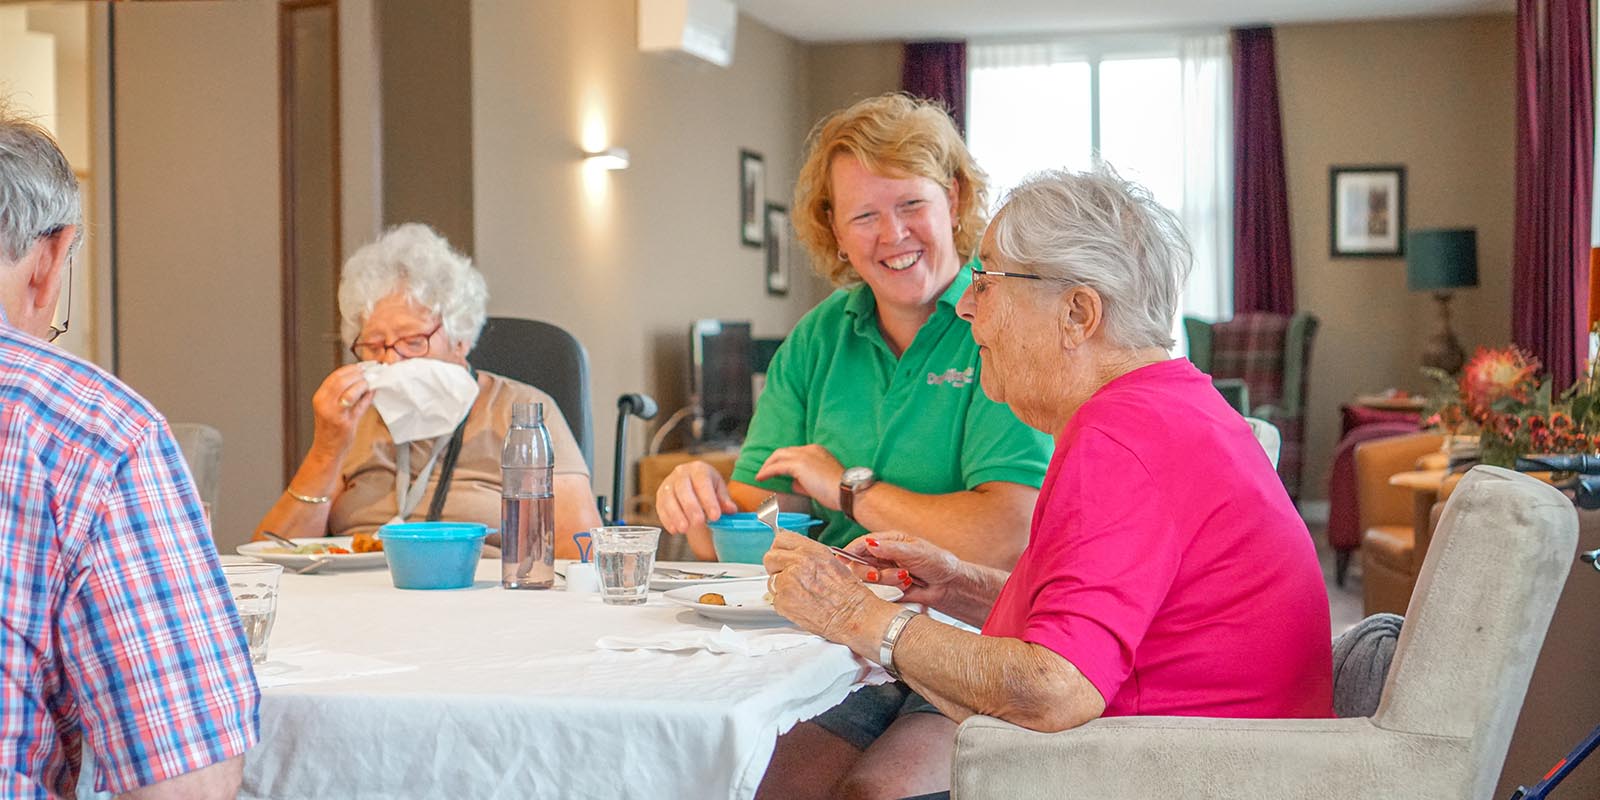 Bewoners met dementie genieten samen van de maaltijd aan een gedekte tafel. Ook de zorgmedewerker is aangeschoven. Rust, sfeer en beleving: een fijne maaltijd voor mensen met dementie.